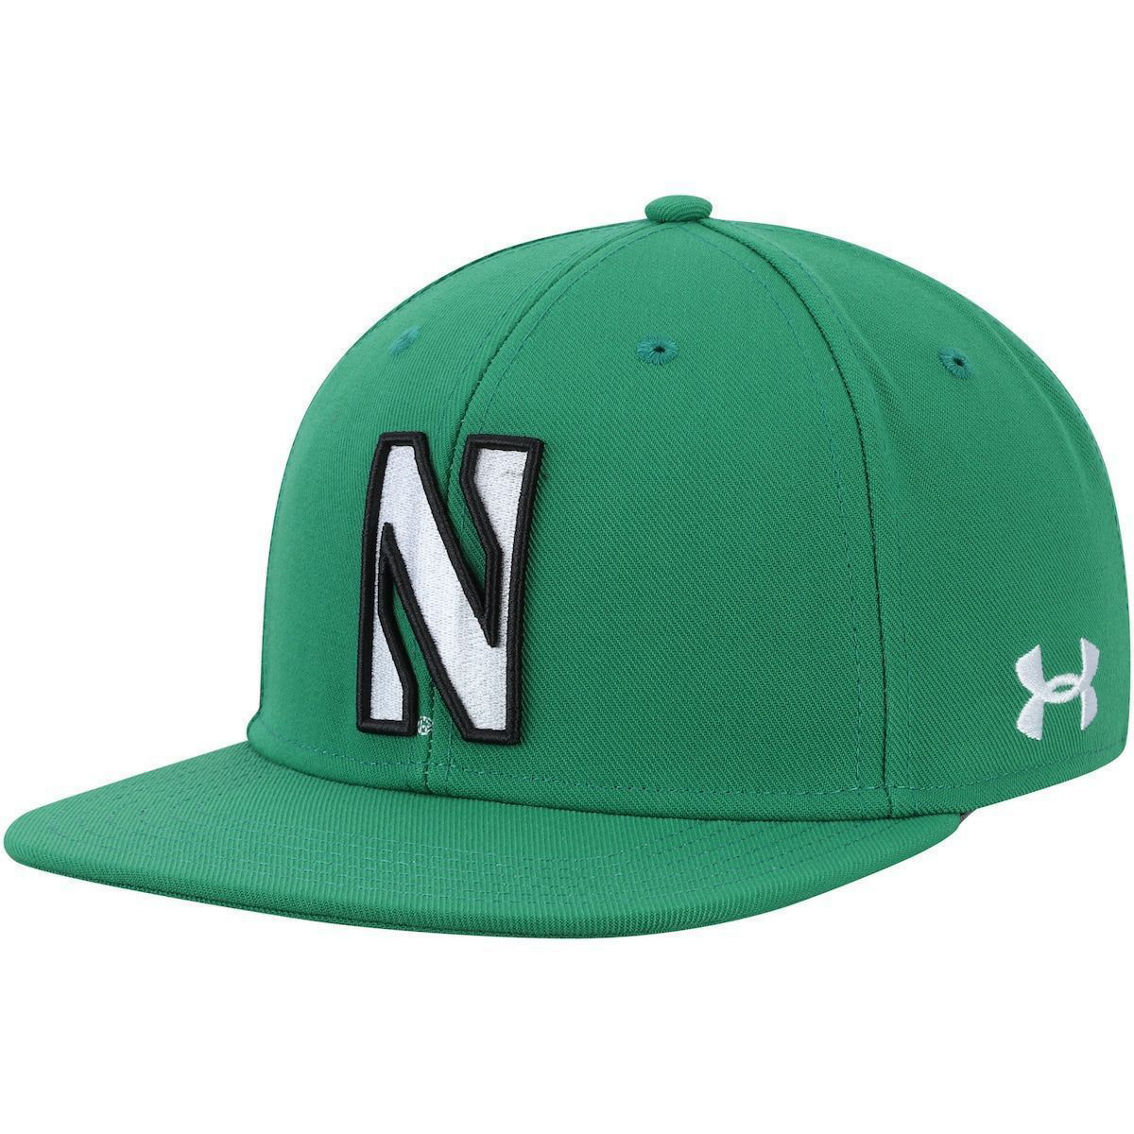 Under Armour Men's Kelly Green Northwestern Wildcats On-field Baseball  Fitted Hat, Fan Shop